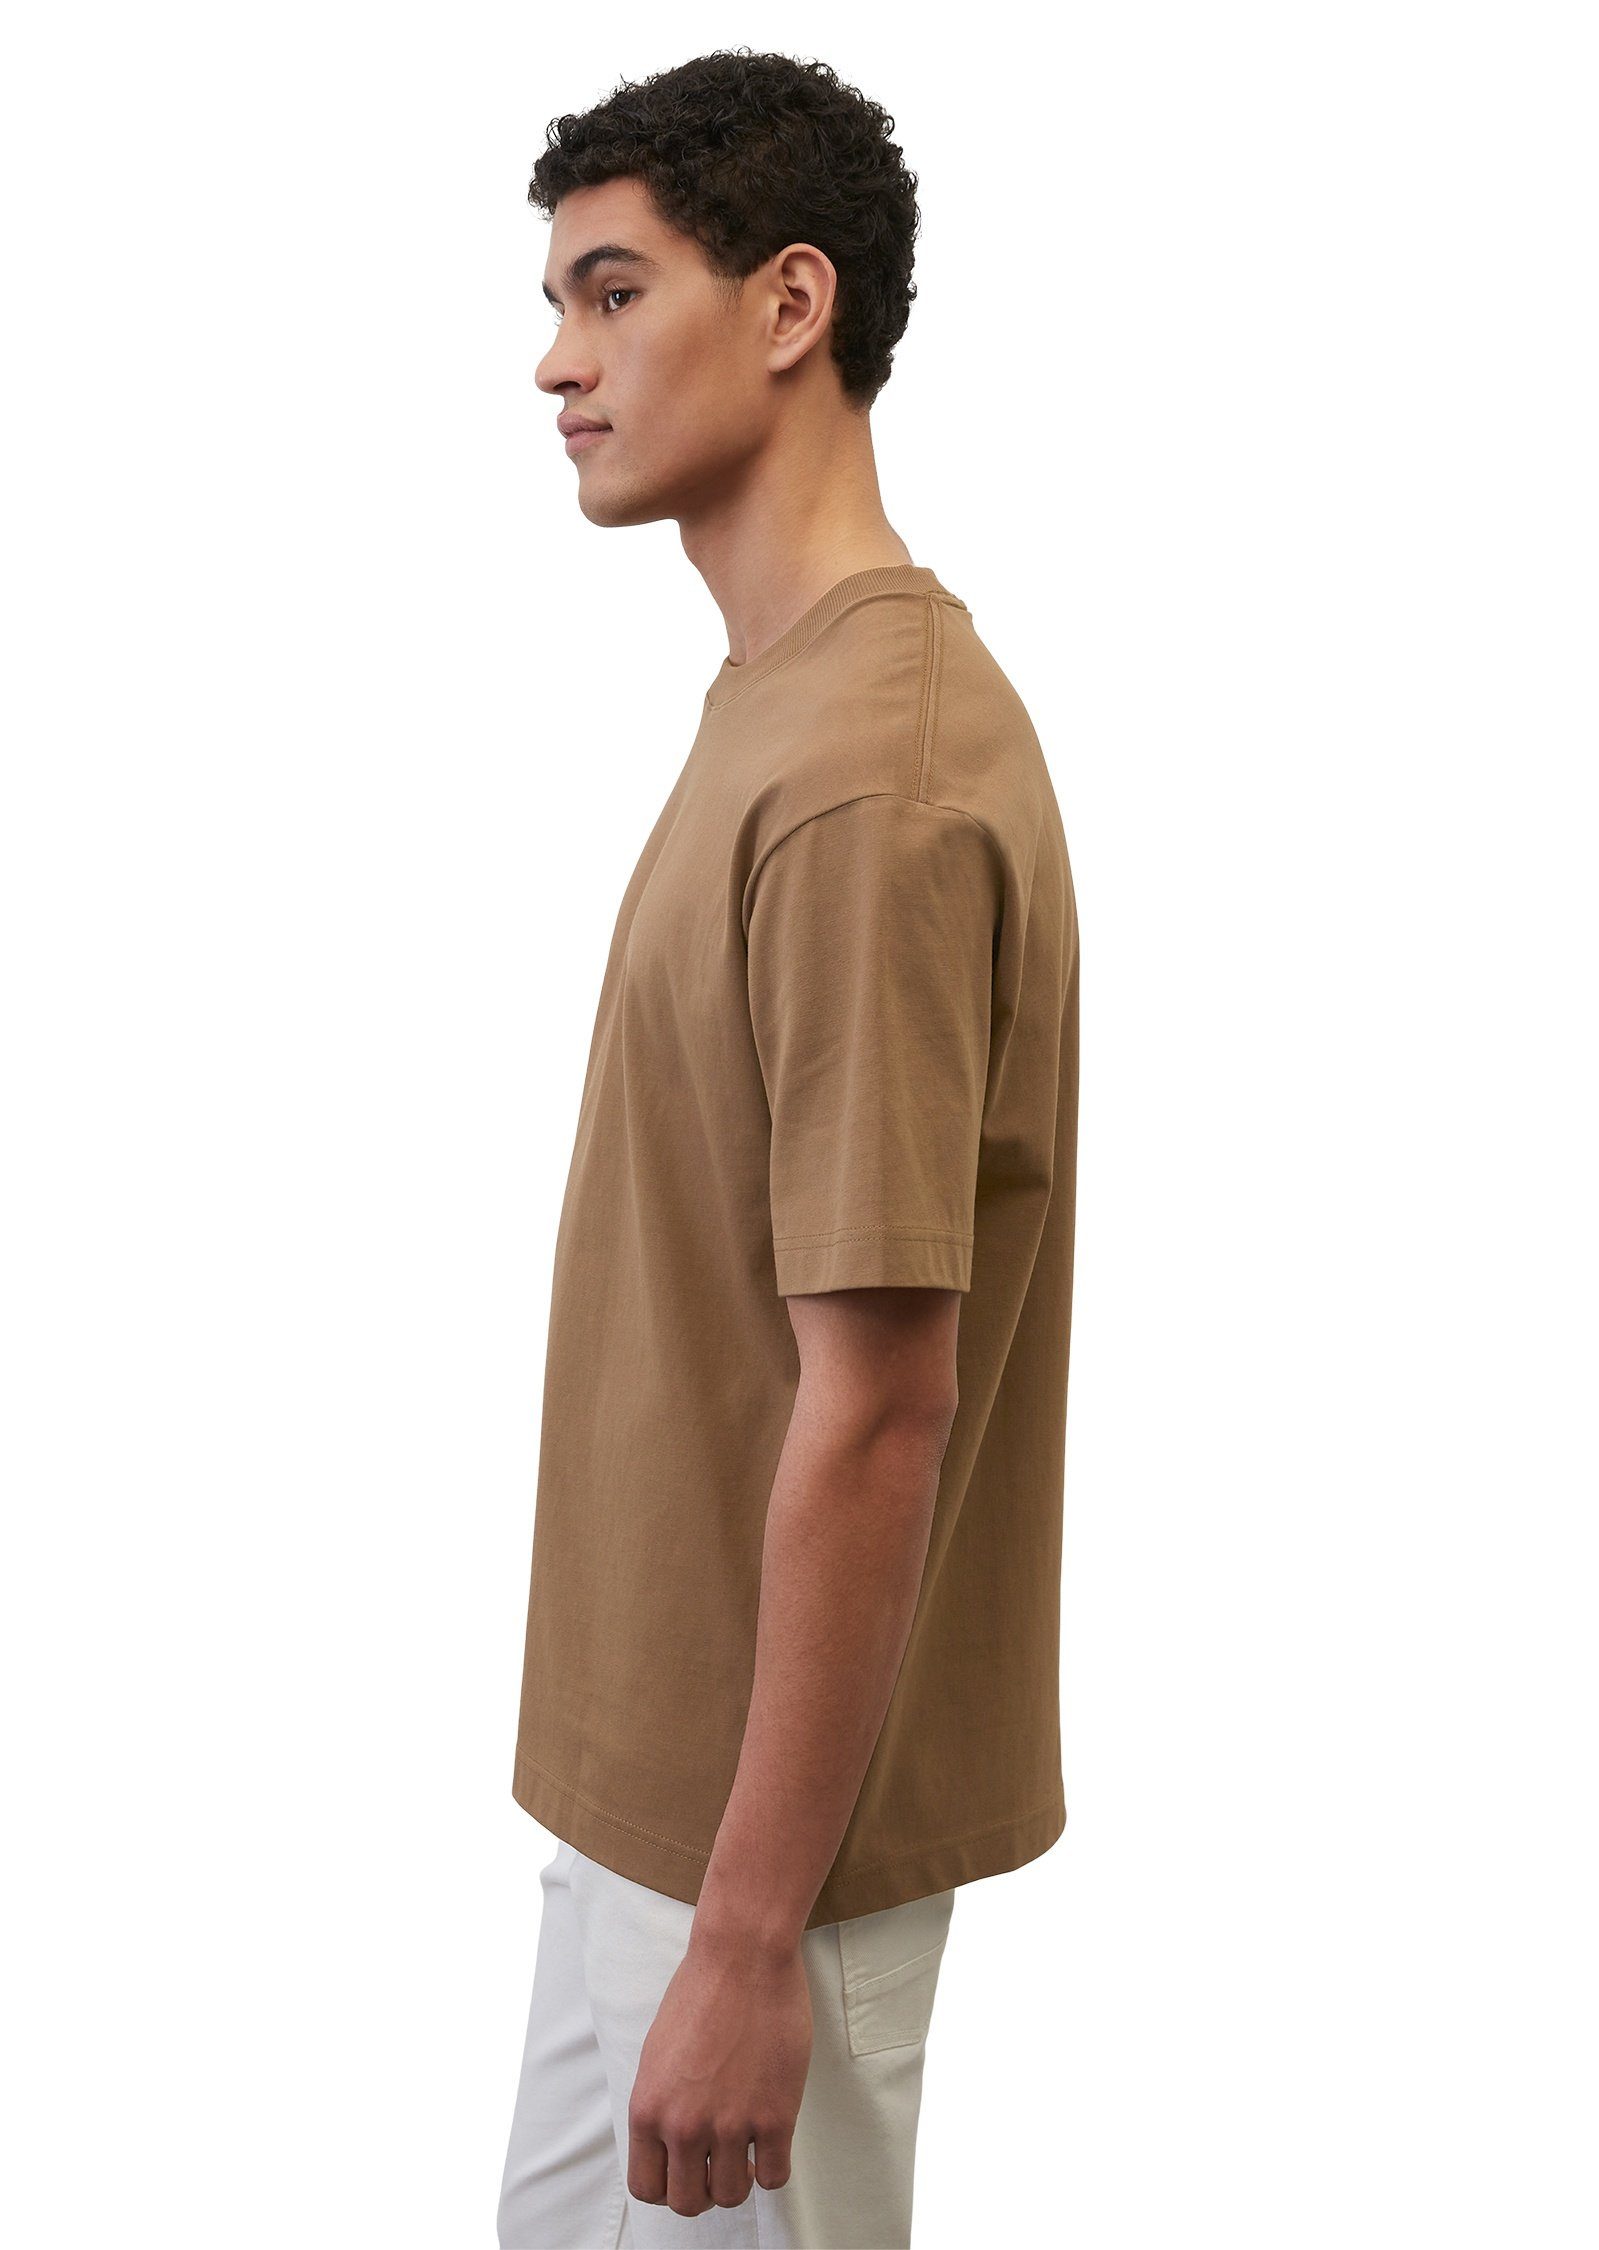 O'Polo braun aus Marc Heavy-Jersey T-Shirt hochwertigem